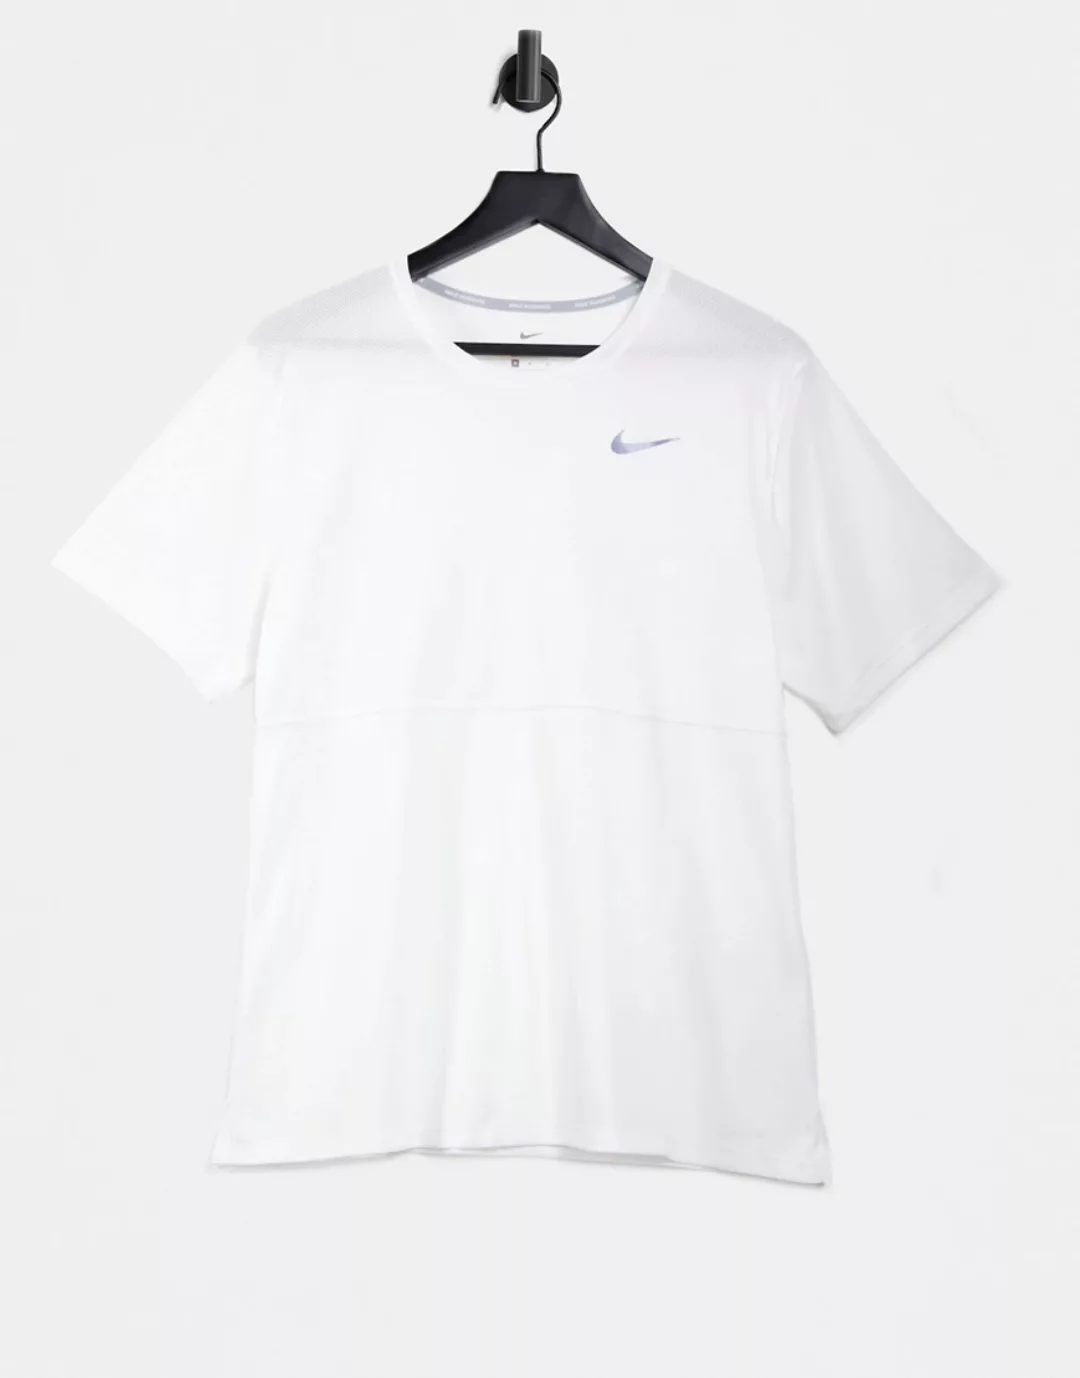 Nike Running – Breathe – T-Shirt in Weiß günstig online kaufen